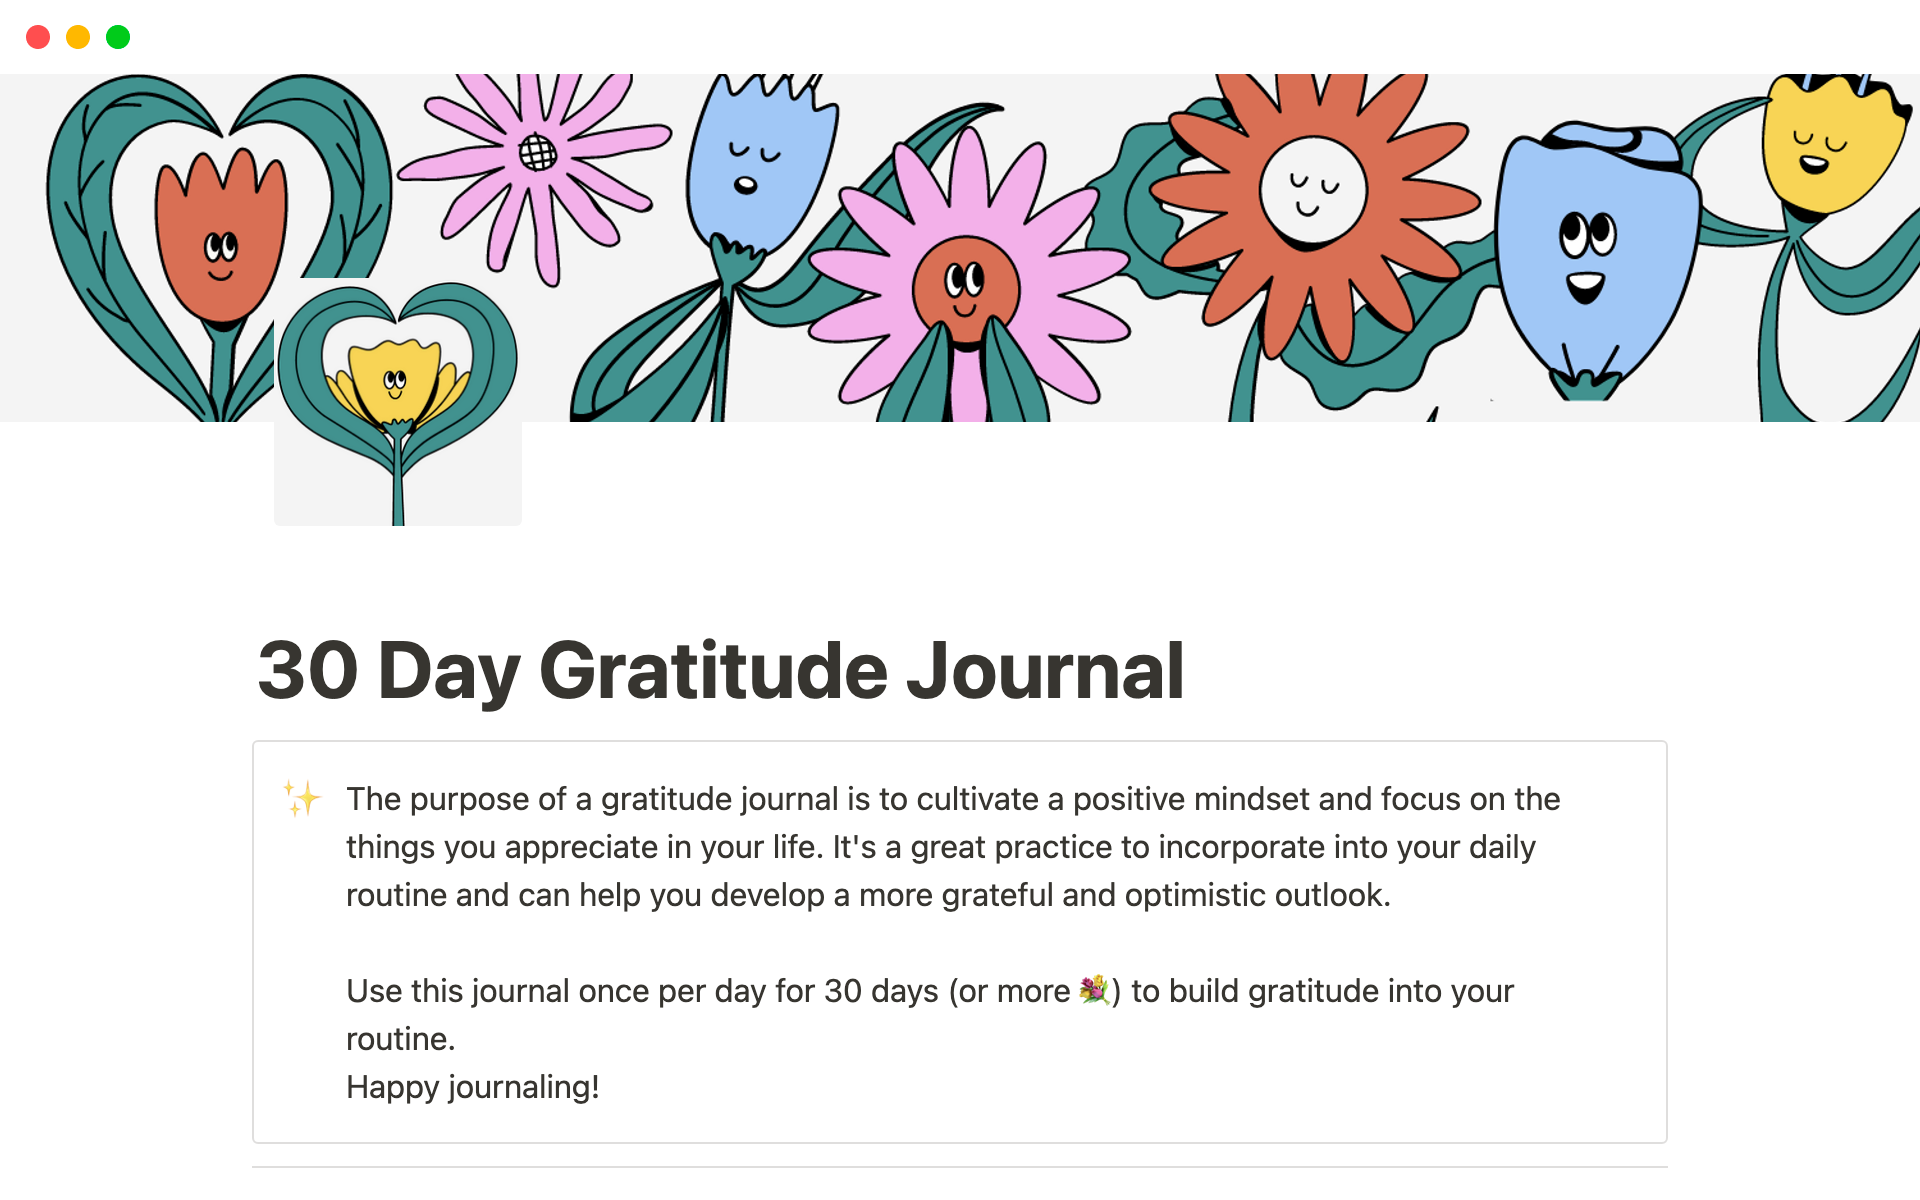 30 Day Gratitude Journal님의 템플릿 미리보기